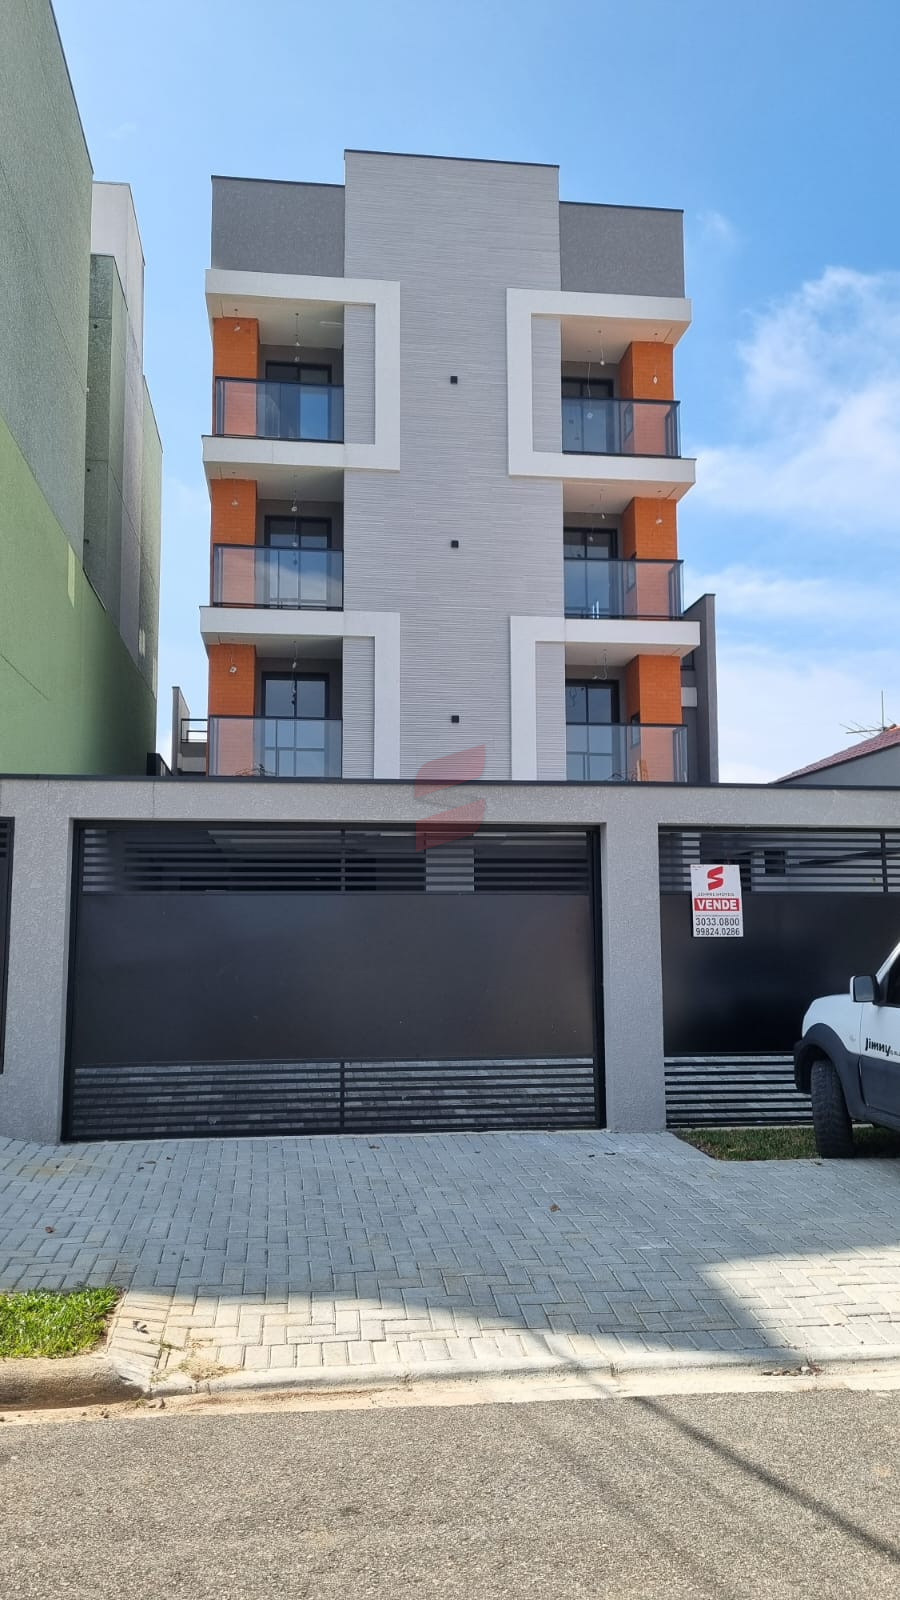 APARTAMENTO com 3 dormitórios à venda com 86.39m² por R$ 349.000,00 no bairro Afonso Pena - SÃO JOSÉ DOS PINHAIS / PR